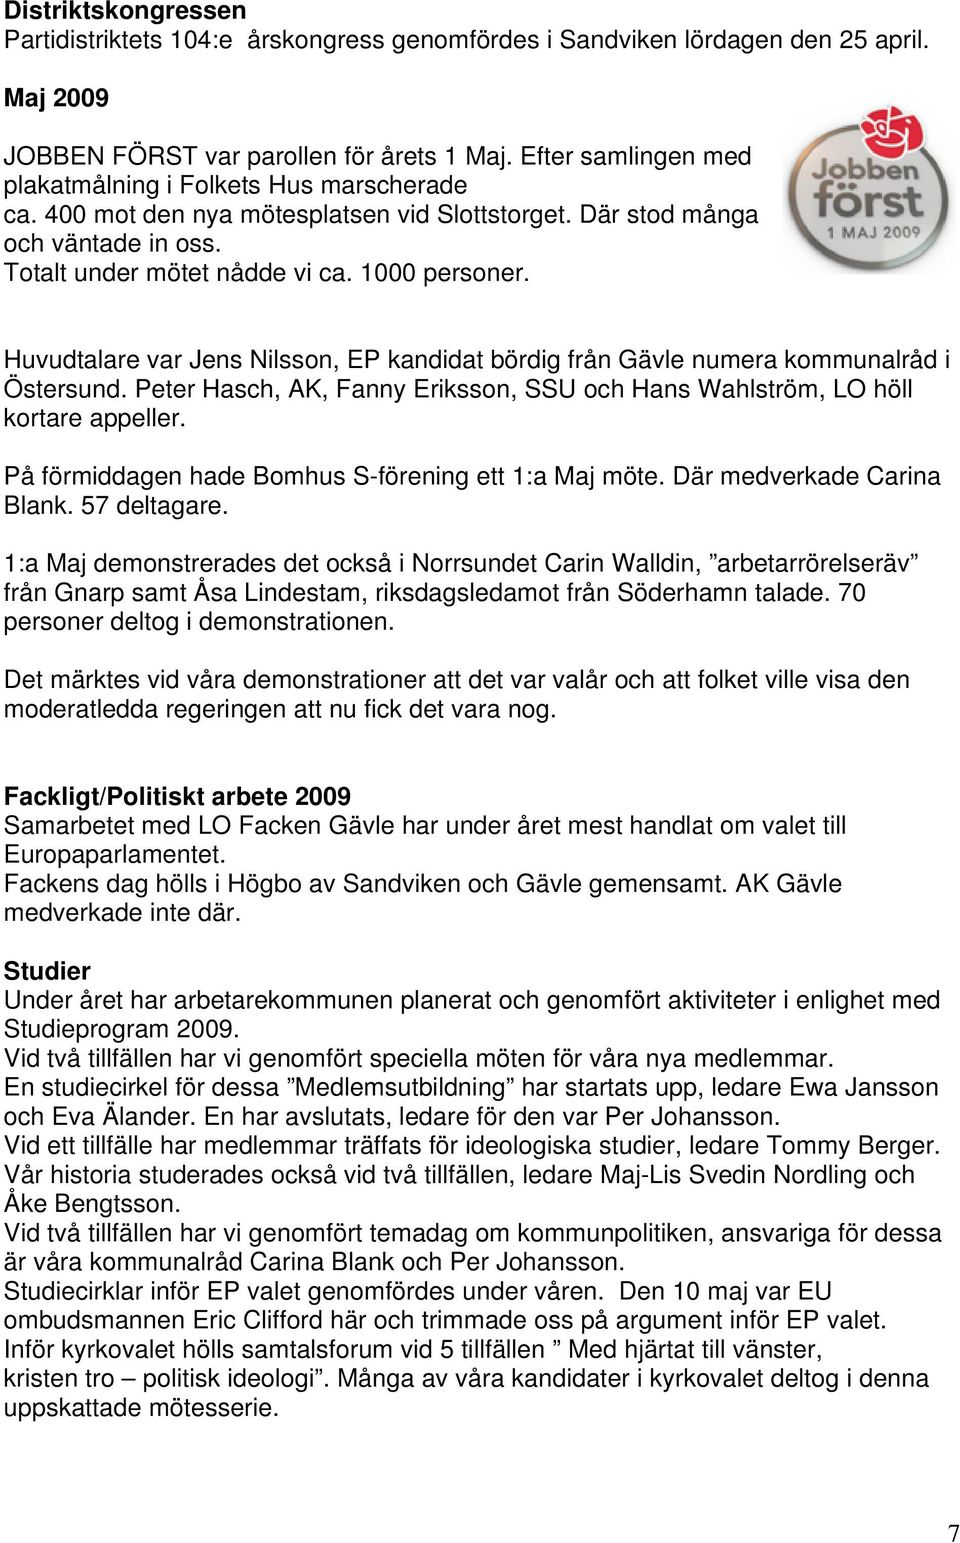 Huvudtalare var Jens Nilsson, EP kandidat bördig från Gävle numera kommunalråd i Östersund. Peter Hasch, AK, Fanny Eriksson, SSU och Hans Wahlström, LO höll kortare appeller.